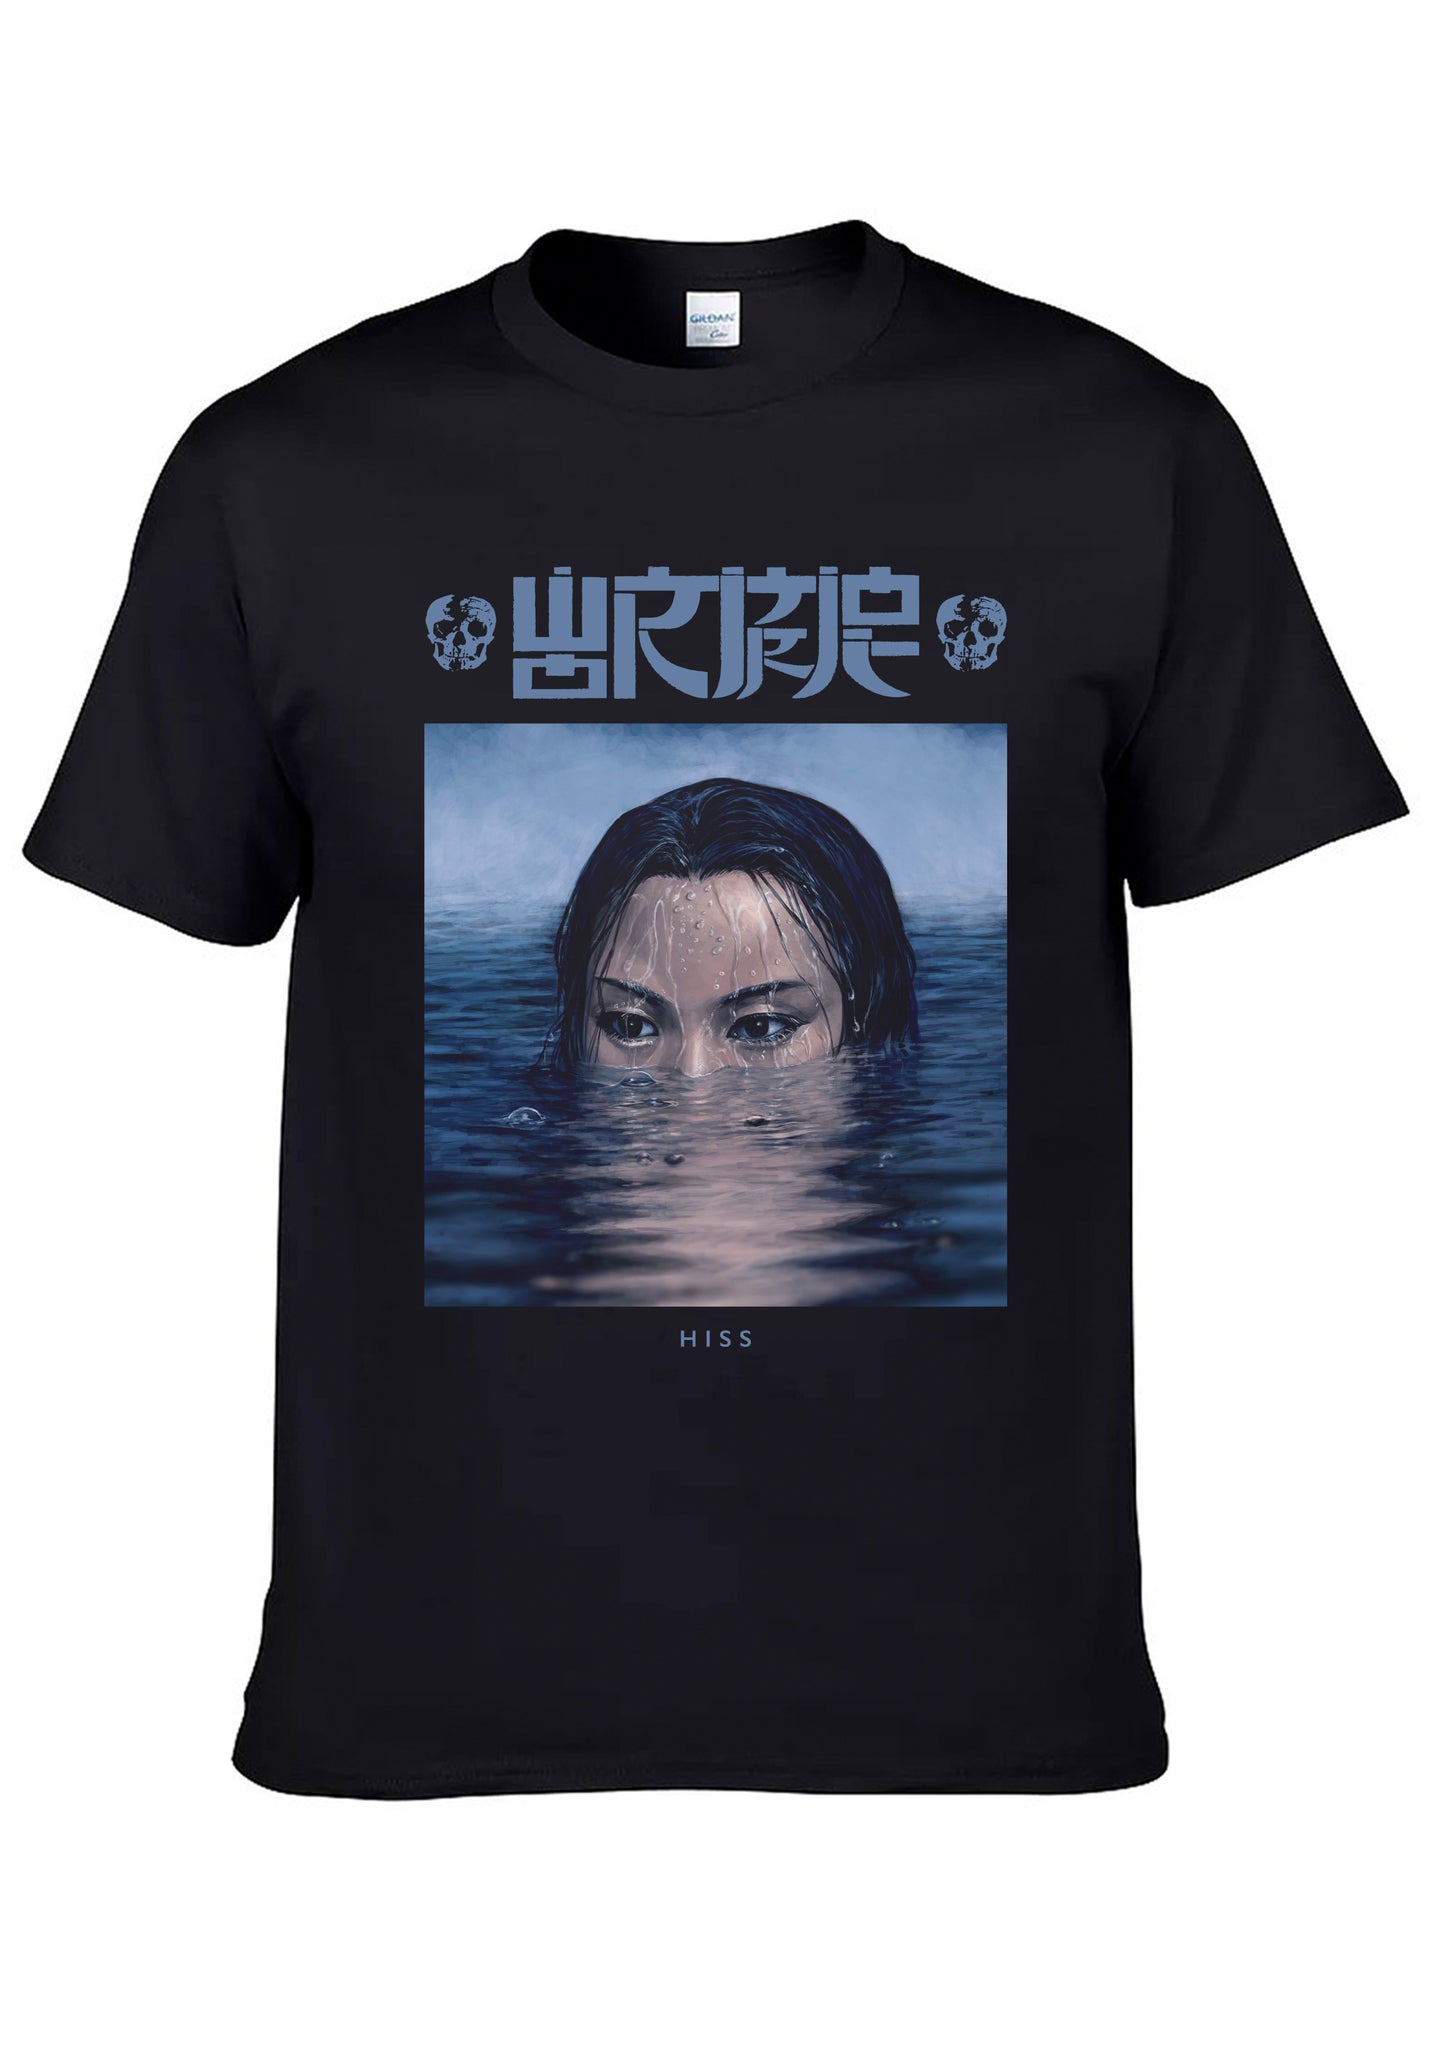 Wormrot "Hiss - Ultraviolence" T shirt